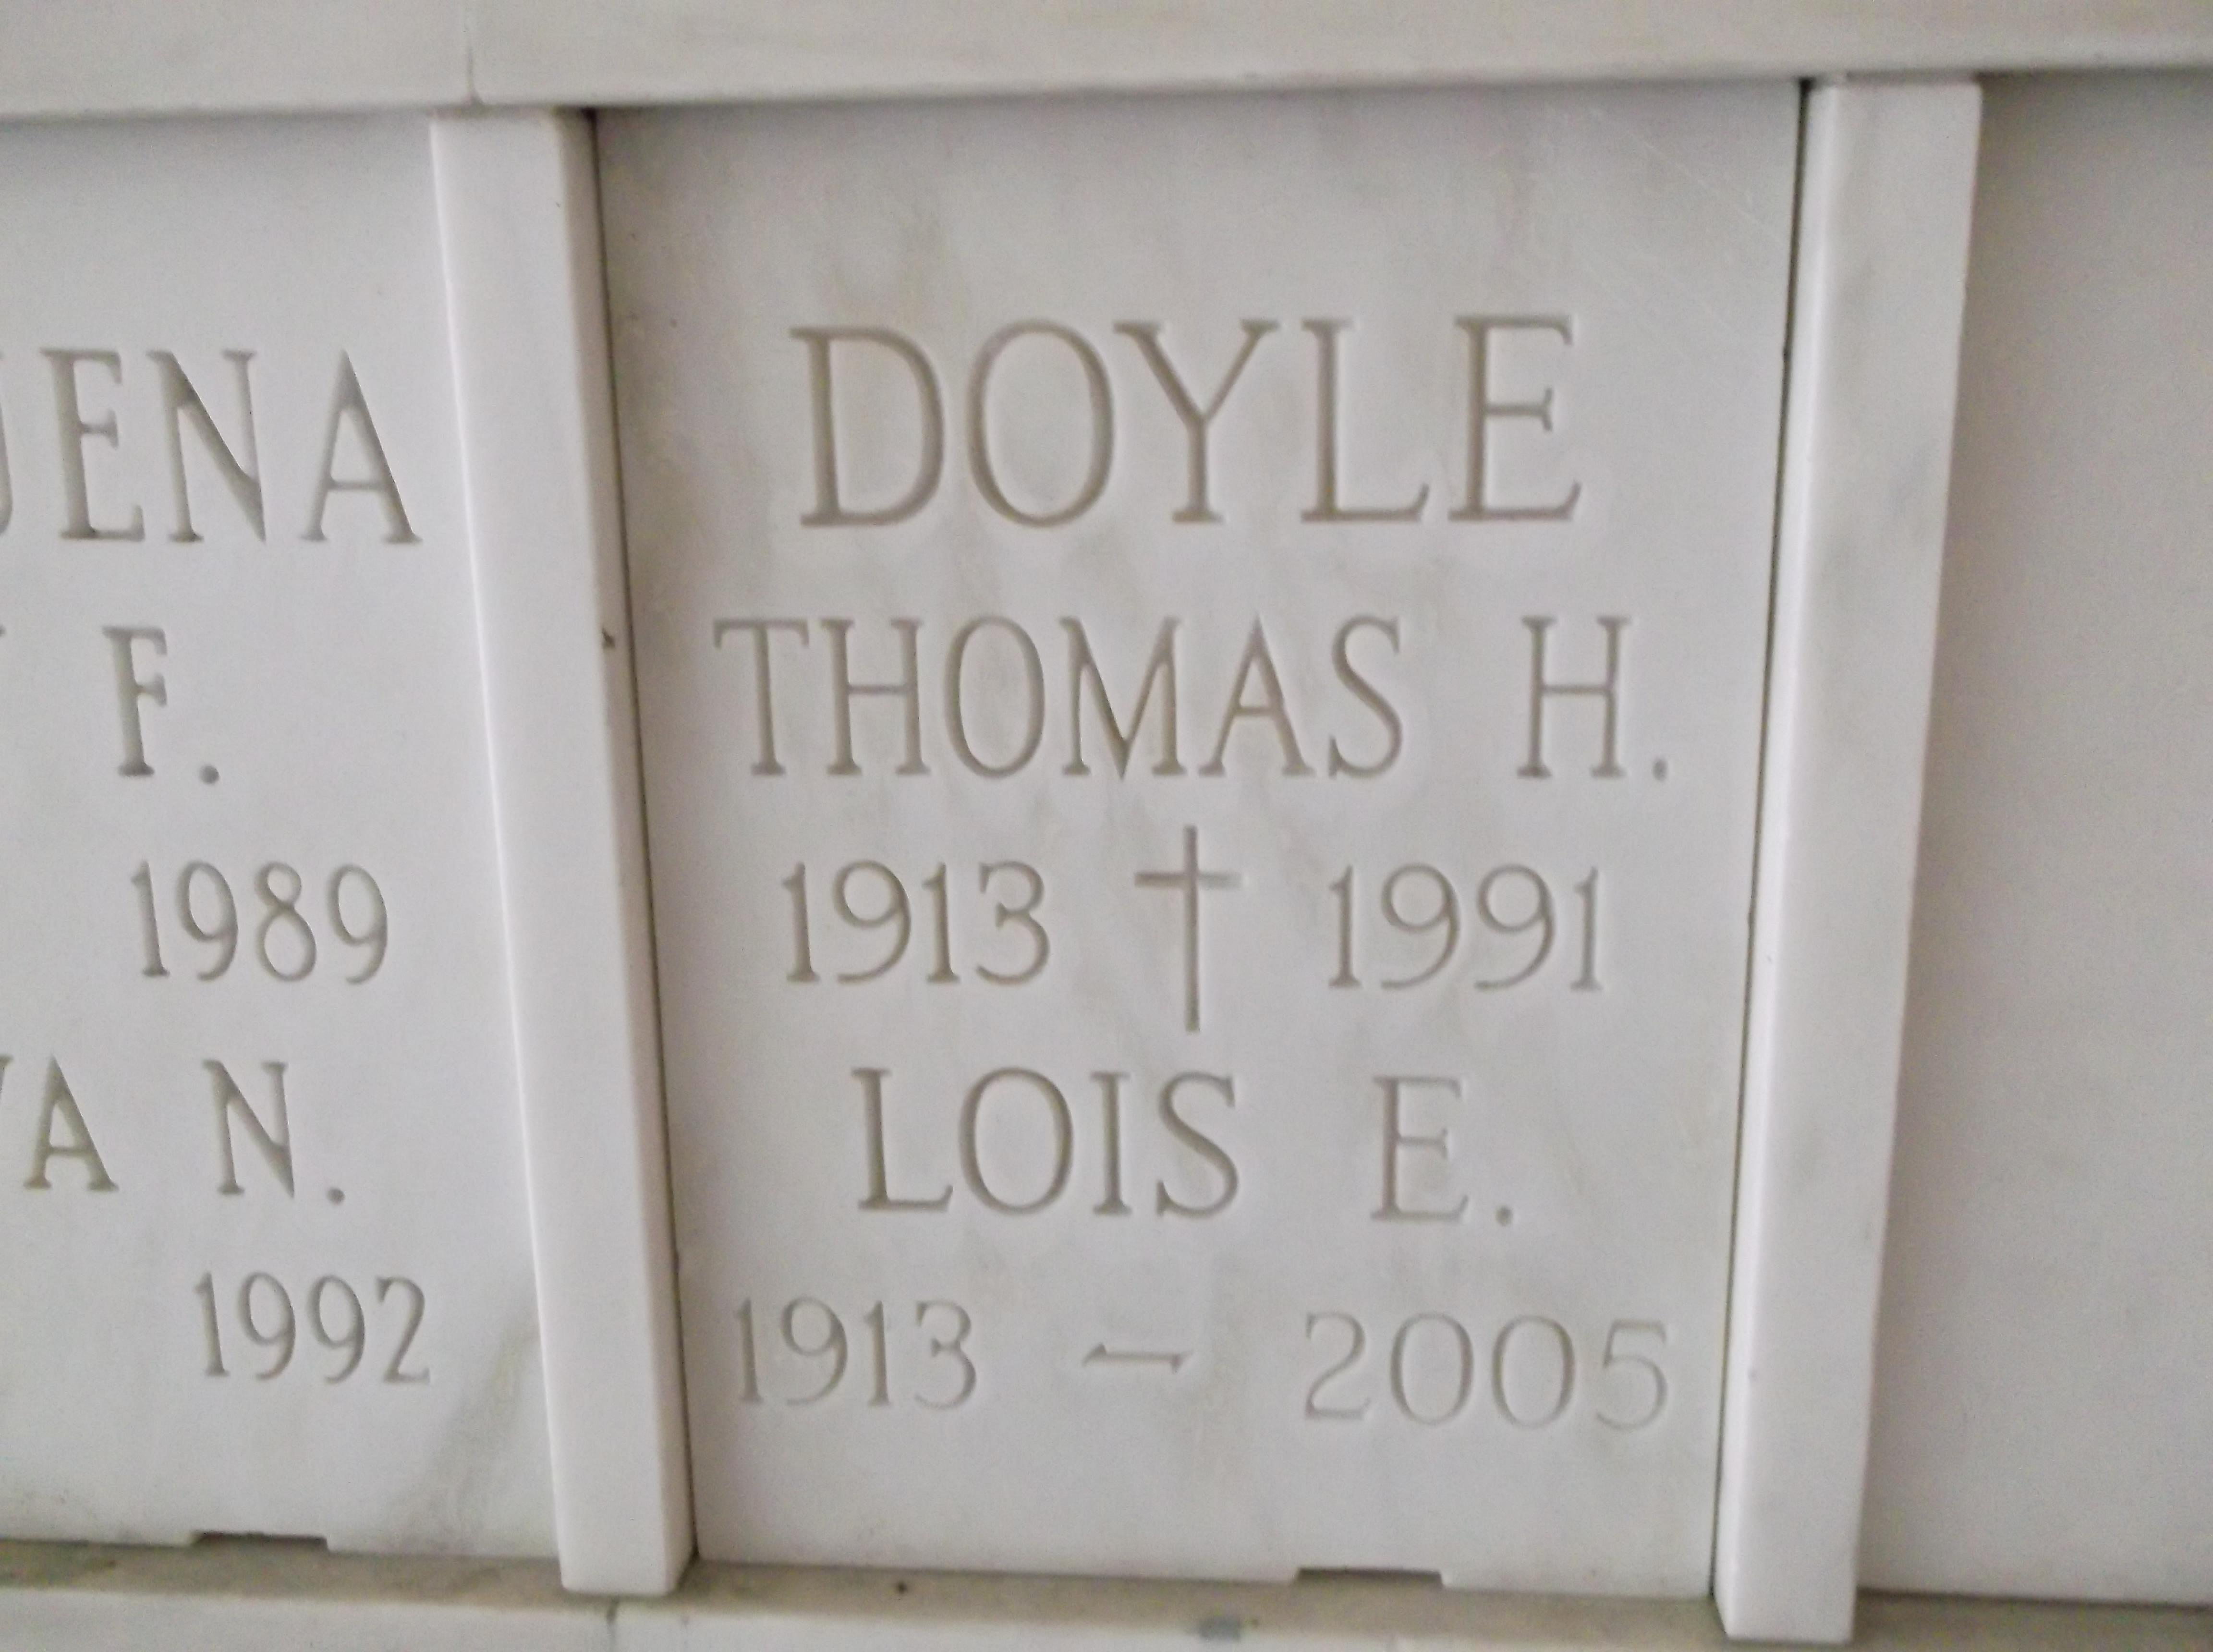 Thomas H Doyle